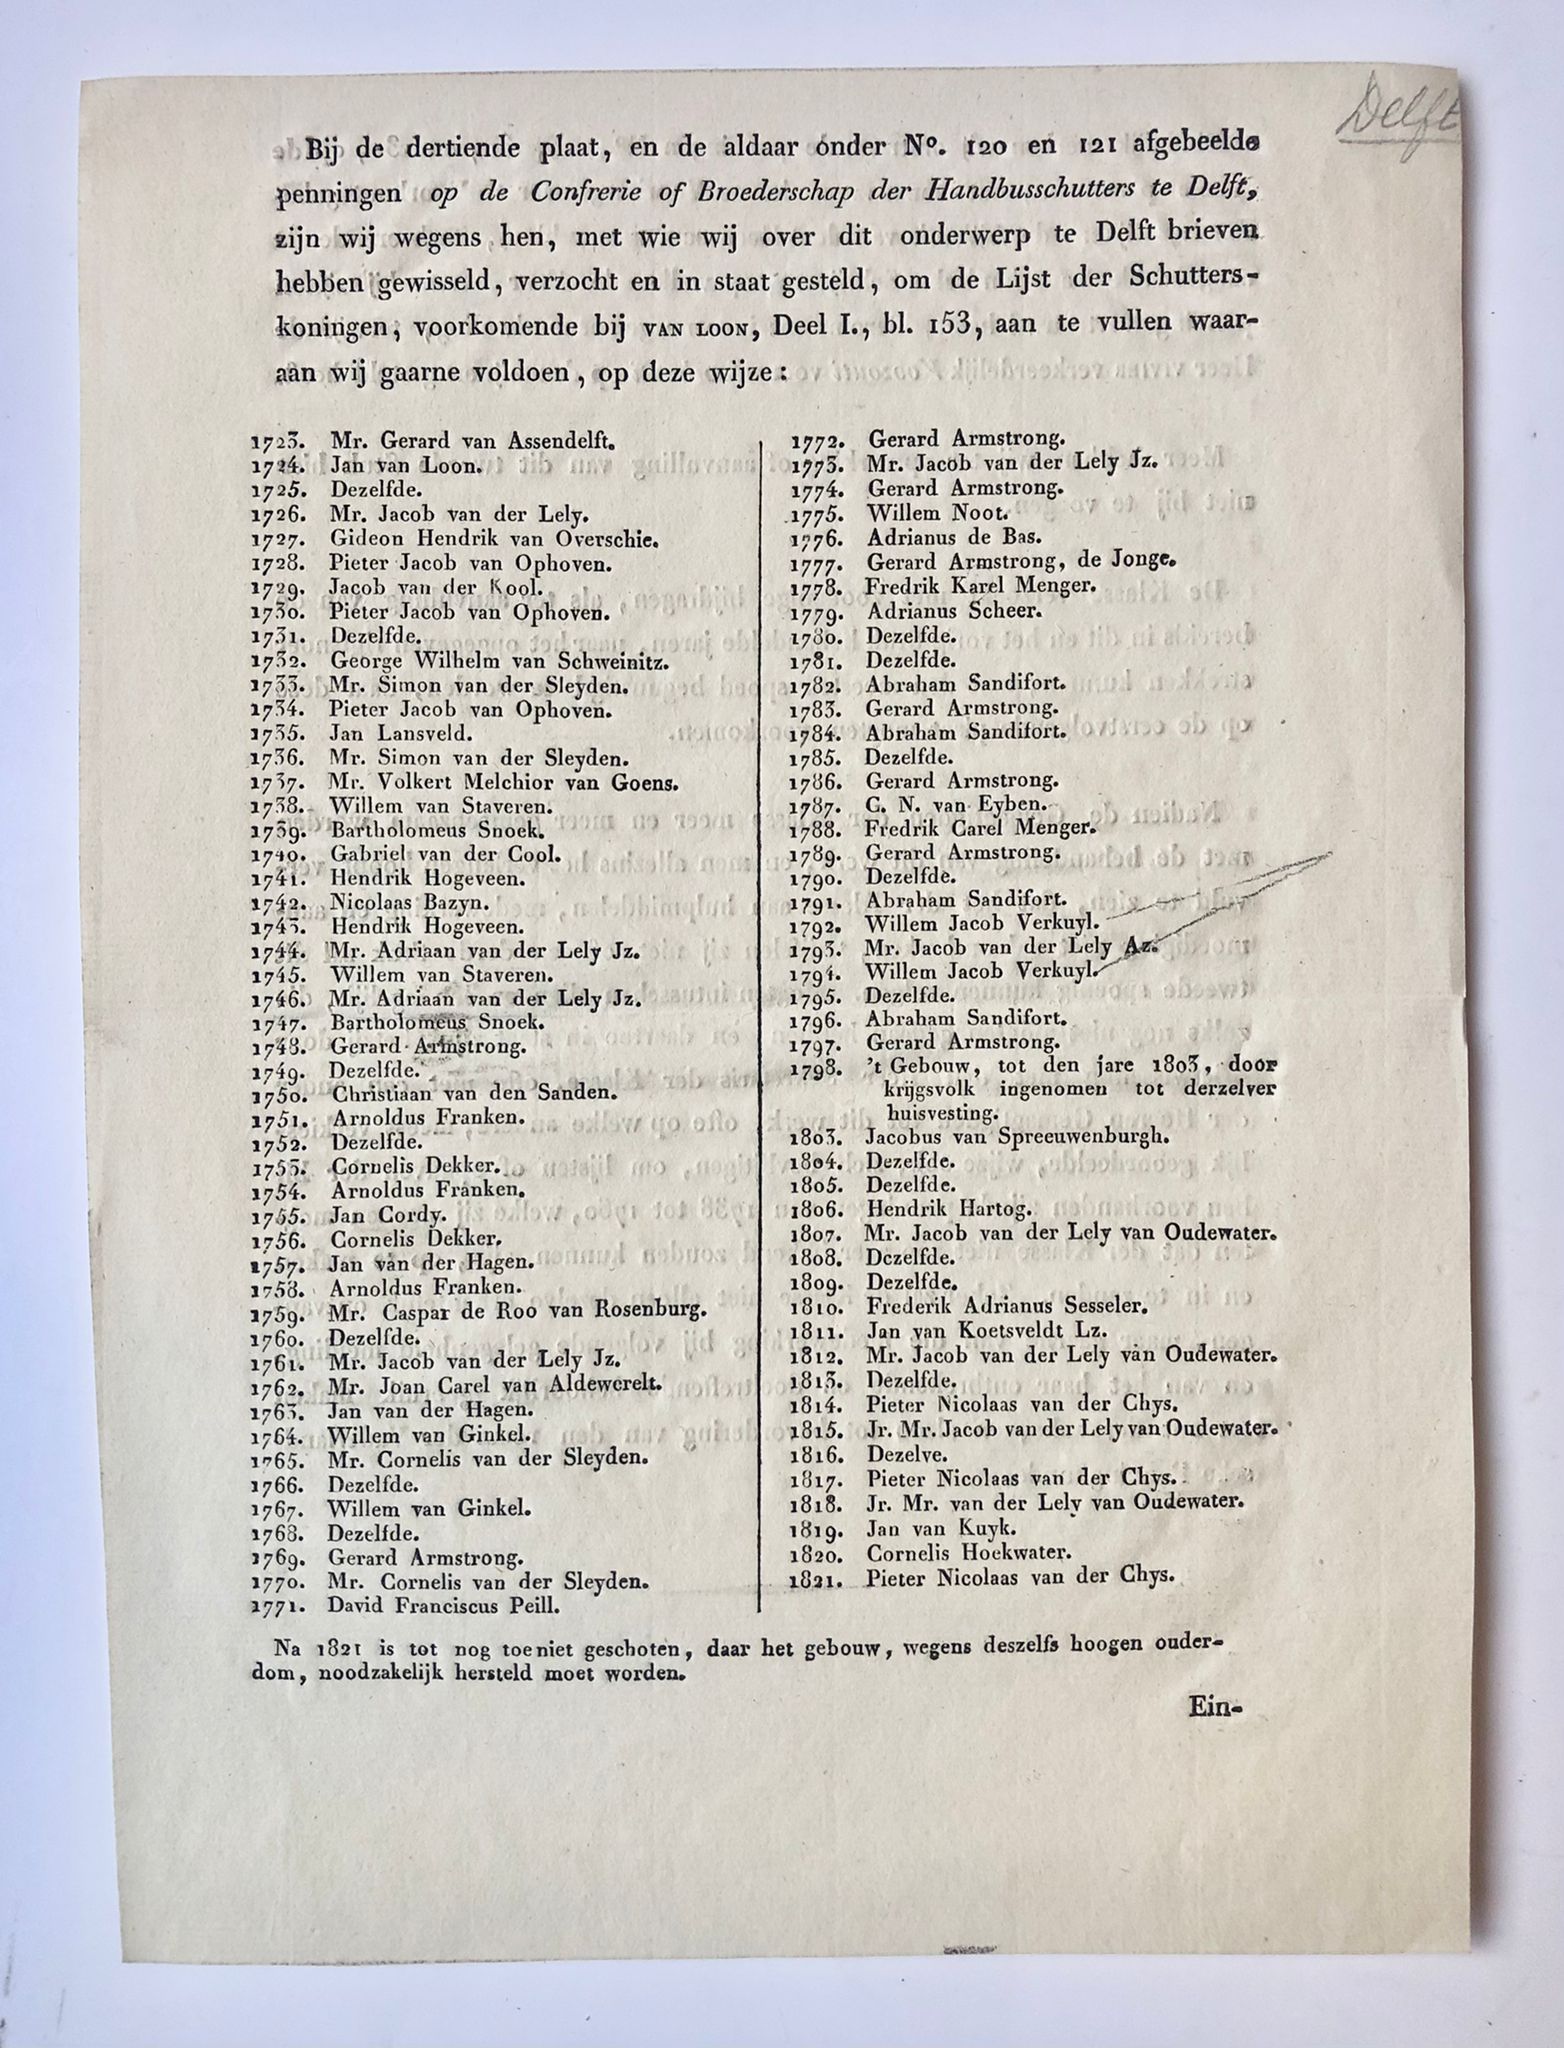 [Printed publication, Delft 1821] Lijst schutterskoningen 1723-1821 van de Conferentie of broederschap der Handbusschutters te Delft. 1 blad, gedrukt.